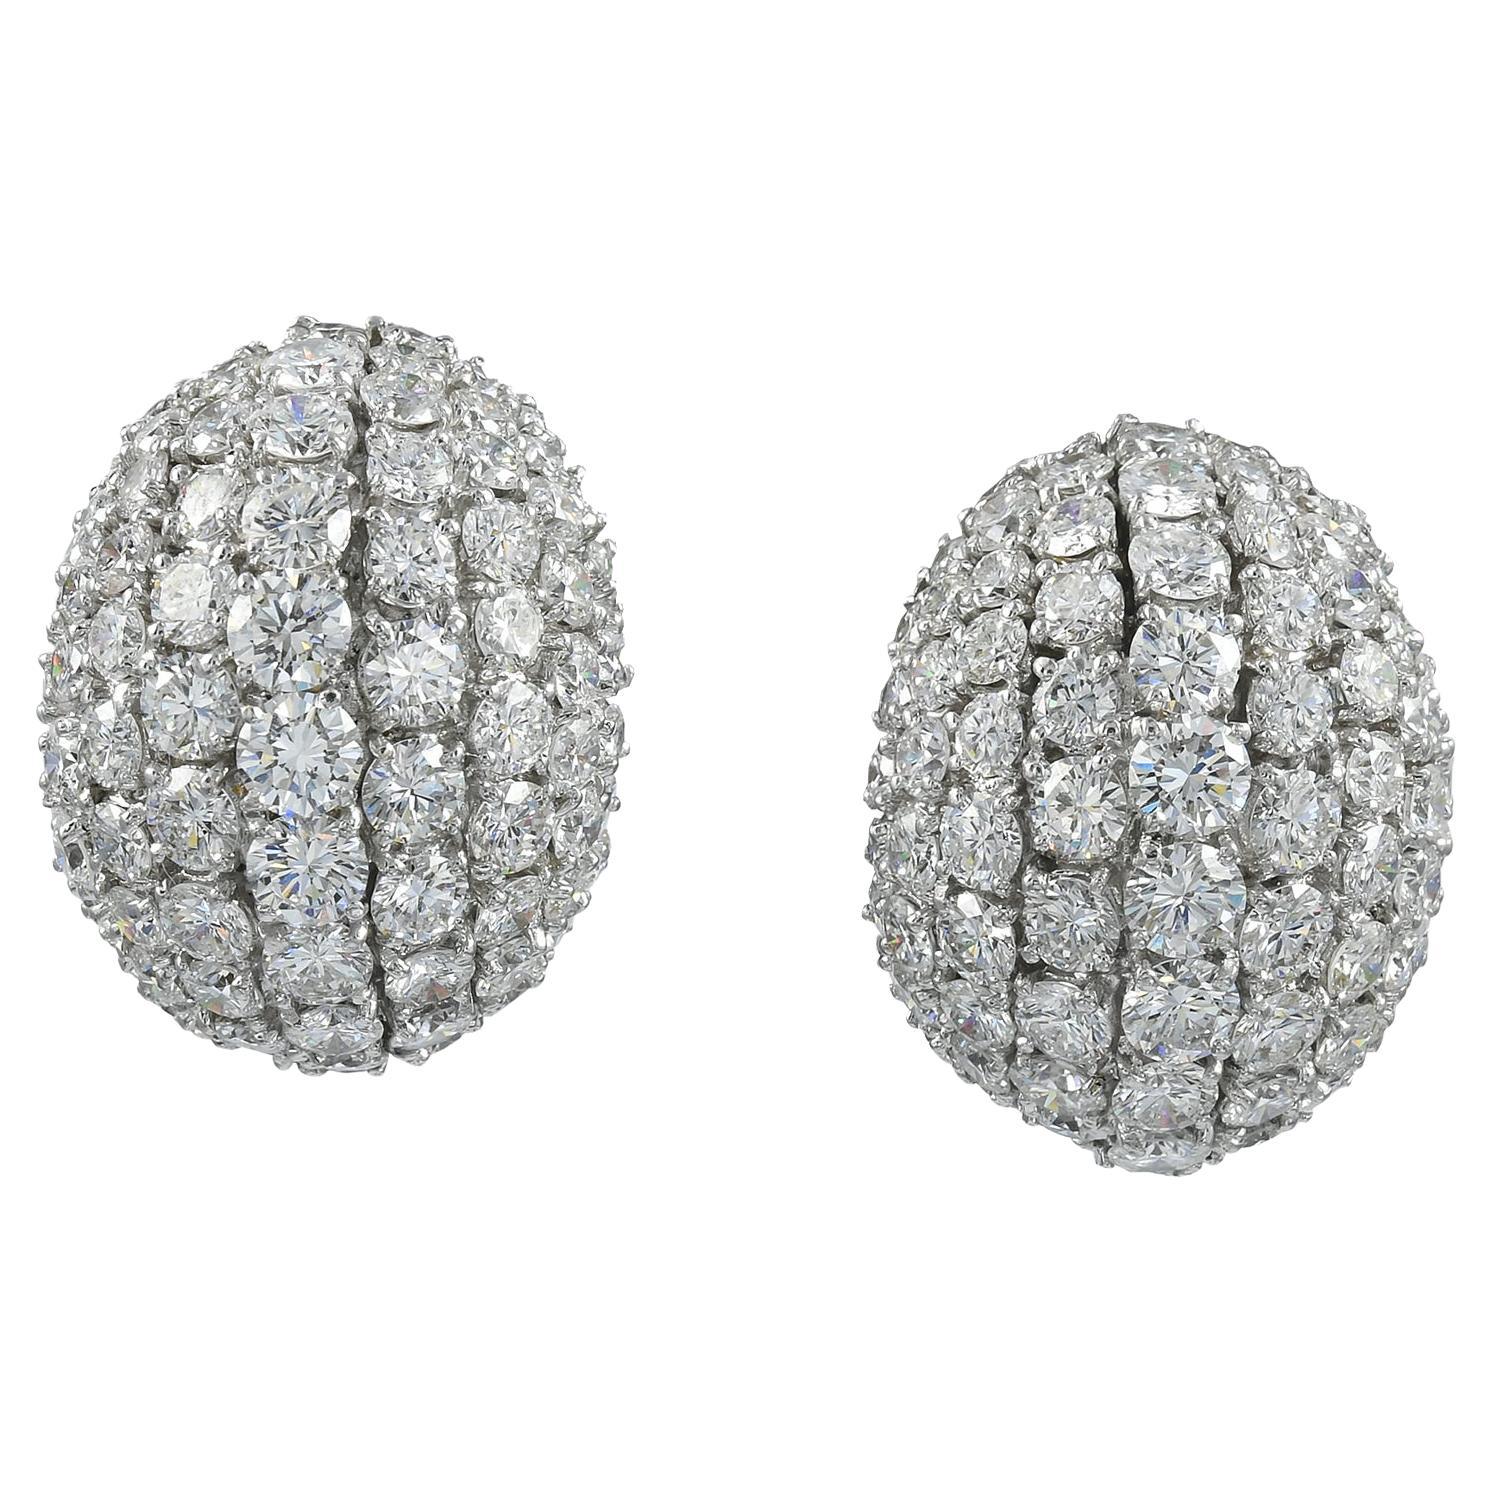 Spectra Fine Jewelry 18 Karat White Gold Diamond Earrings